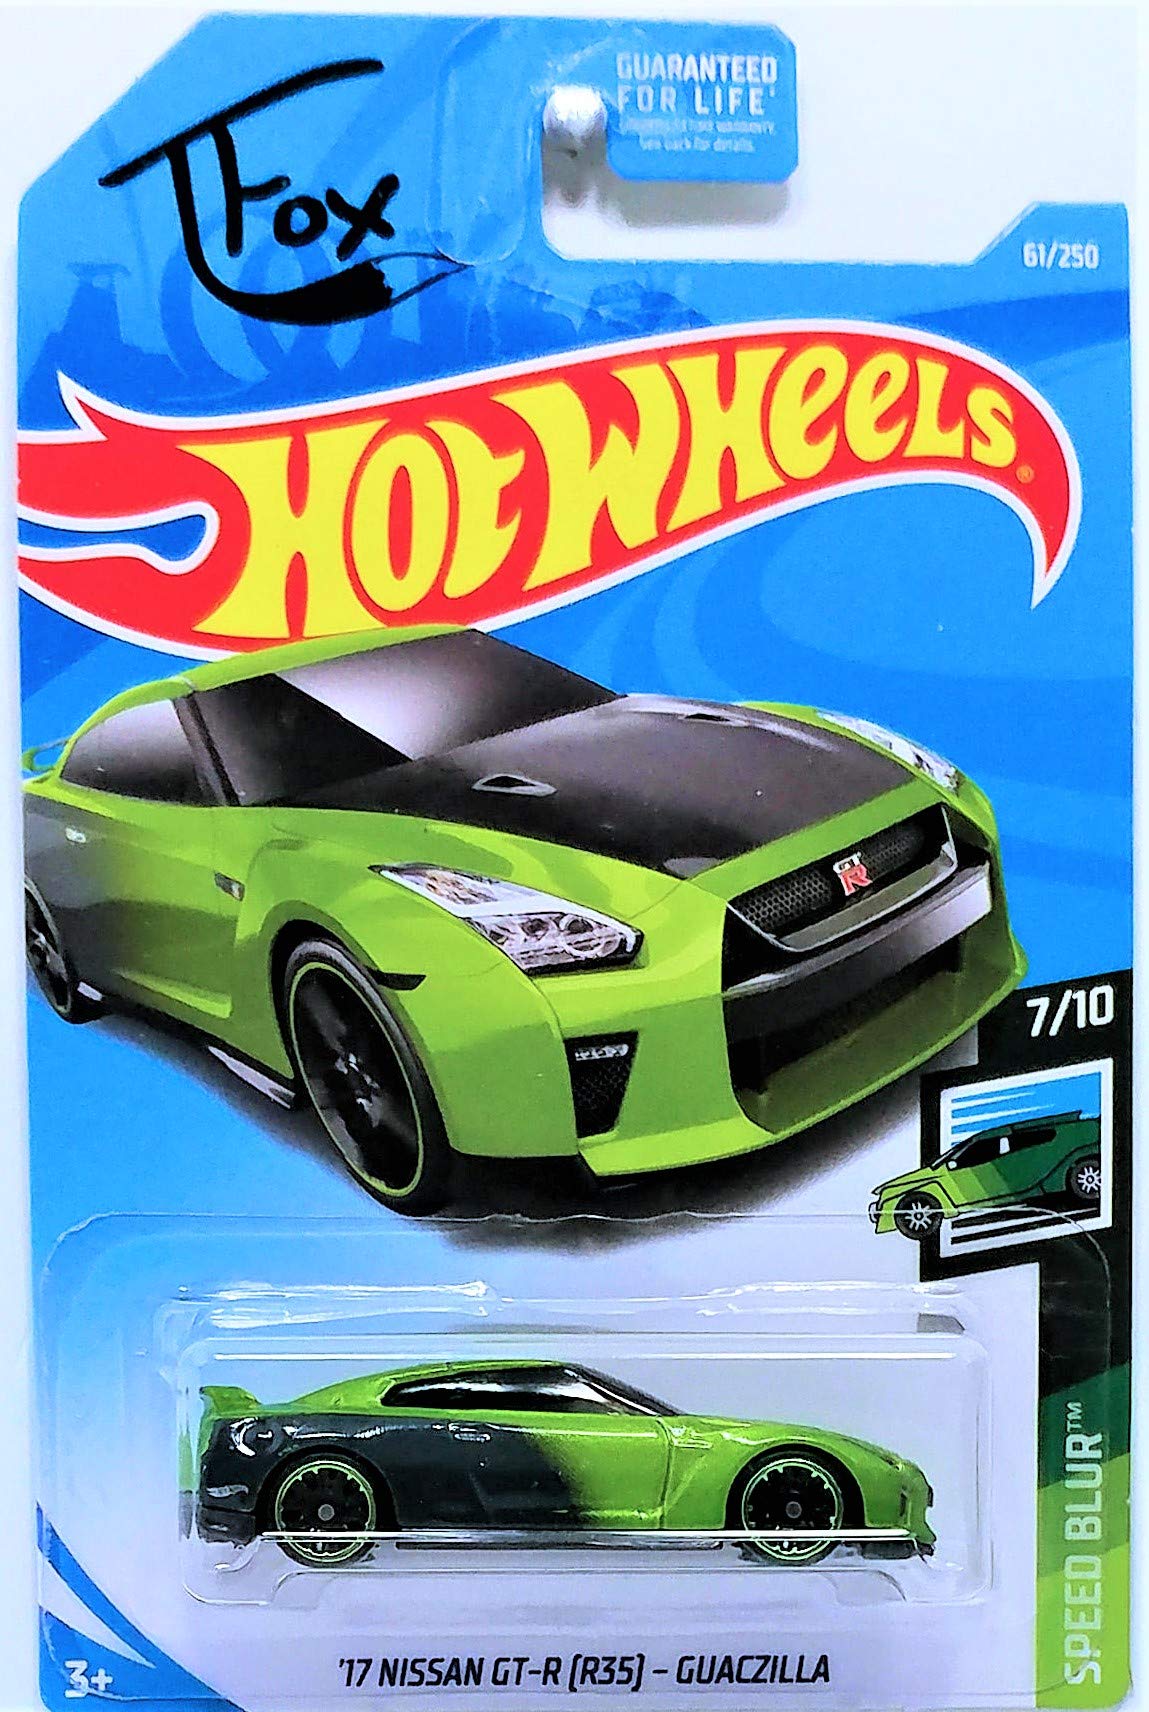 Hot Wheels 2019 Speed Blur T Fox '17 Nissan GT-R (R35) Guaczilla 61/250, Green